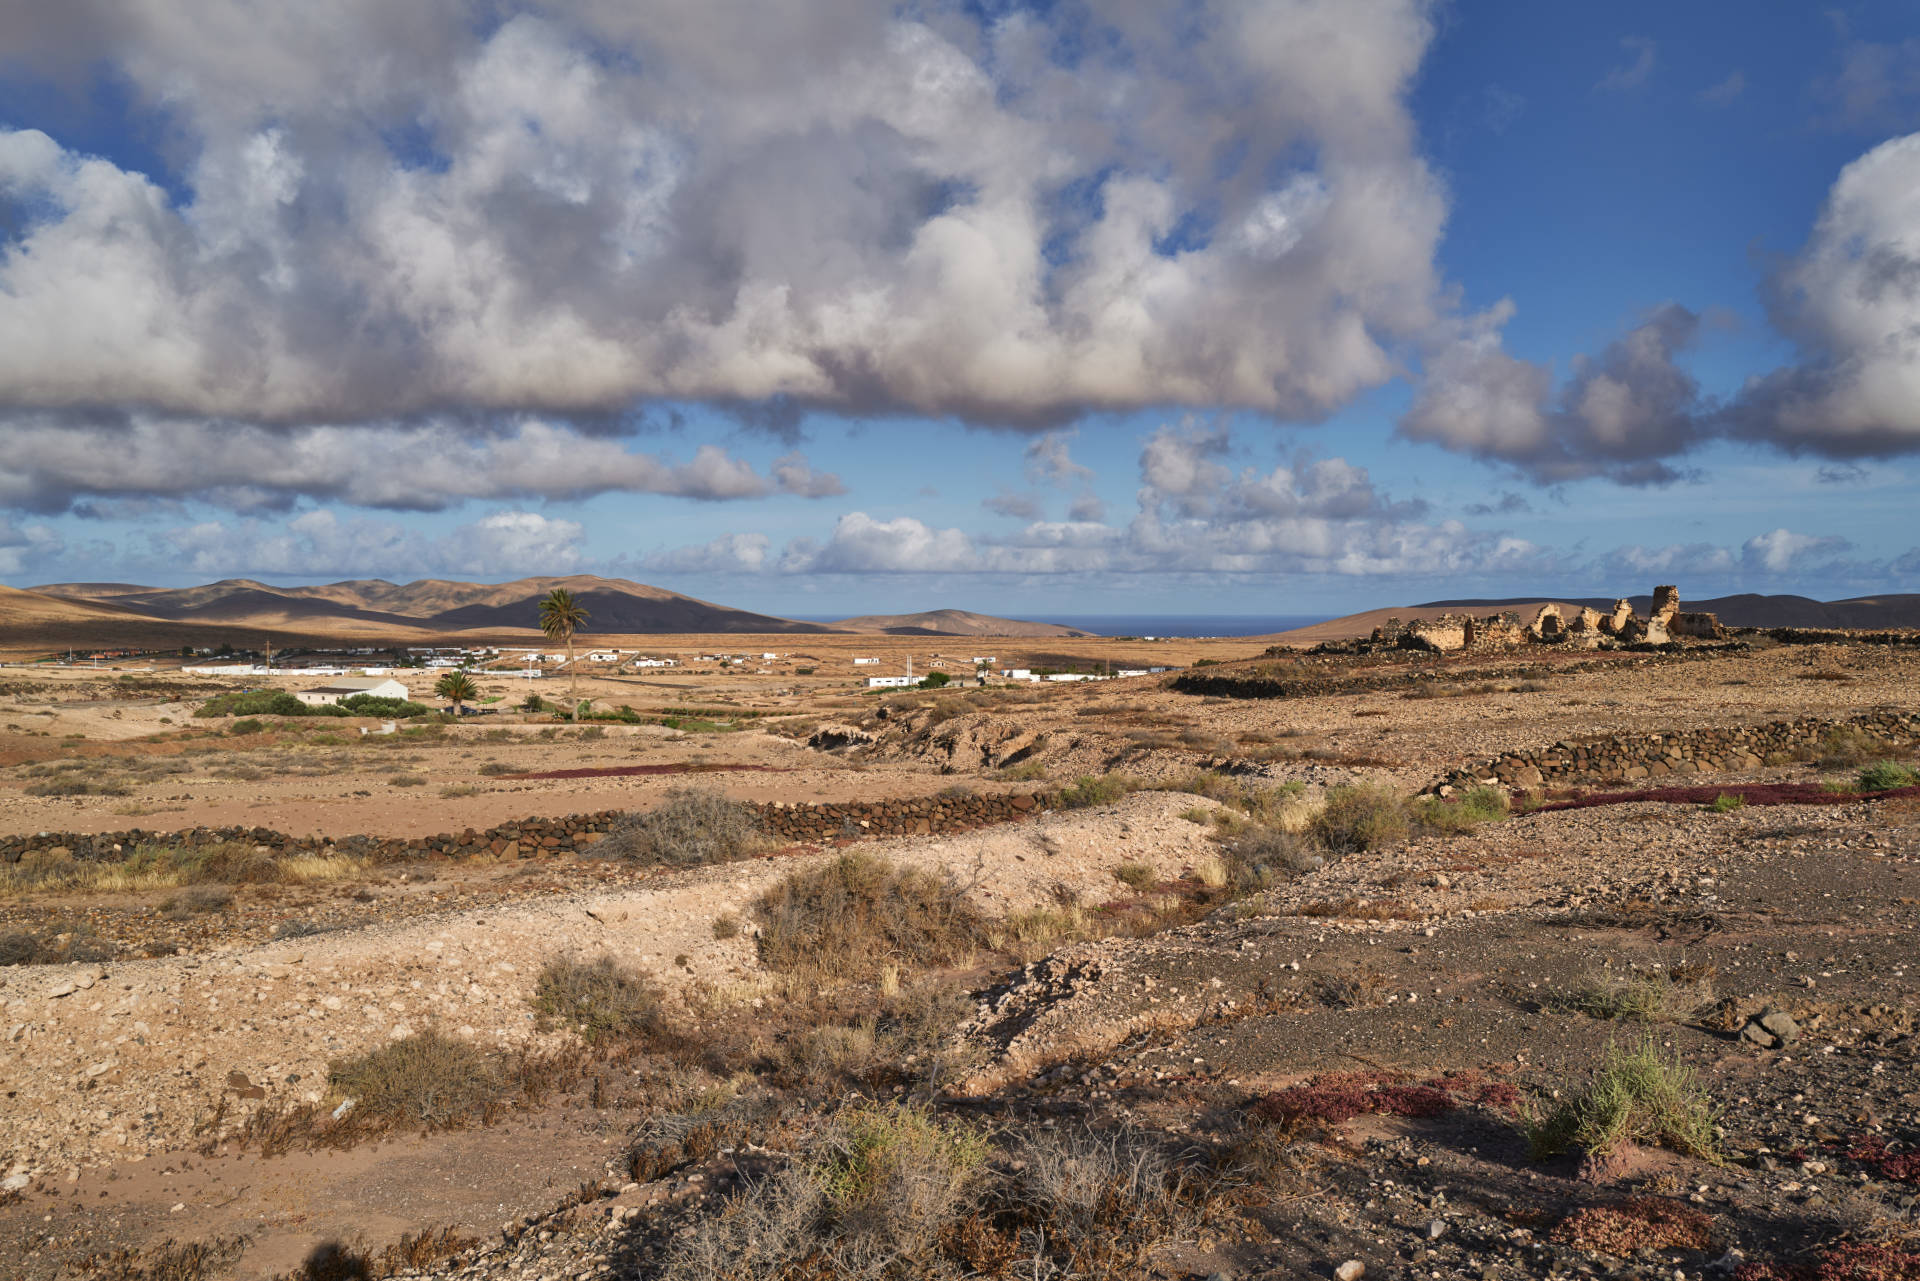 Cañada de Melián am Rincón de Fayca nahe Tefía Fuerteventura.